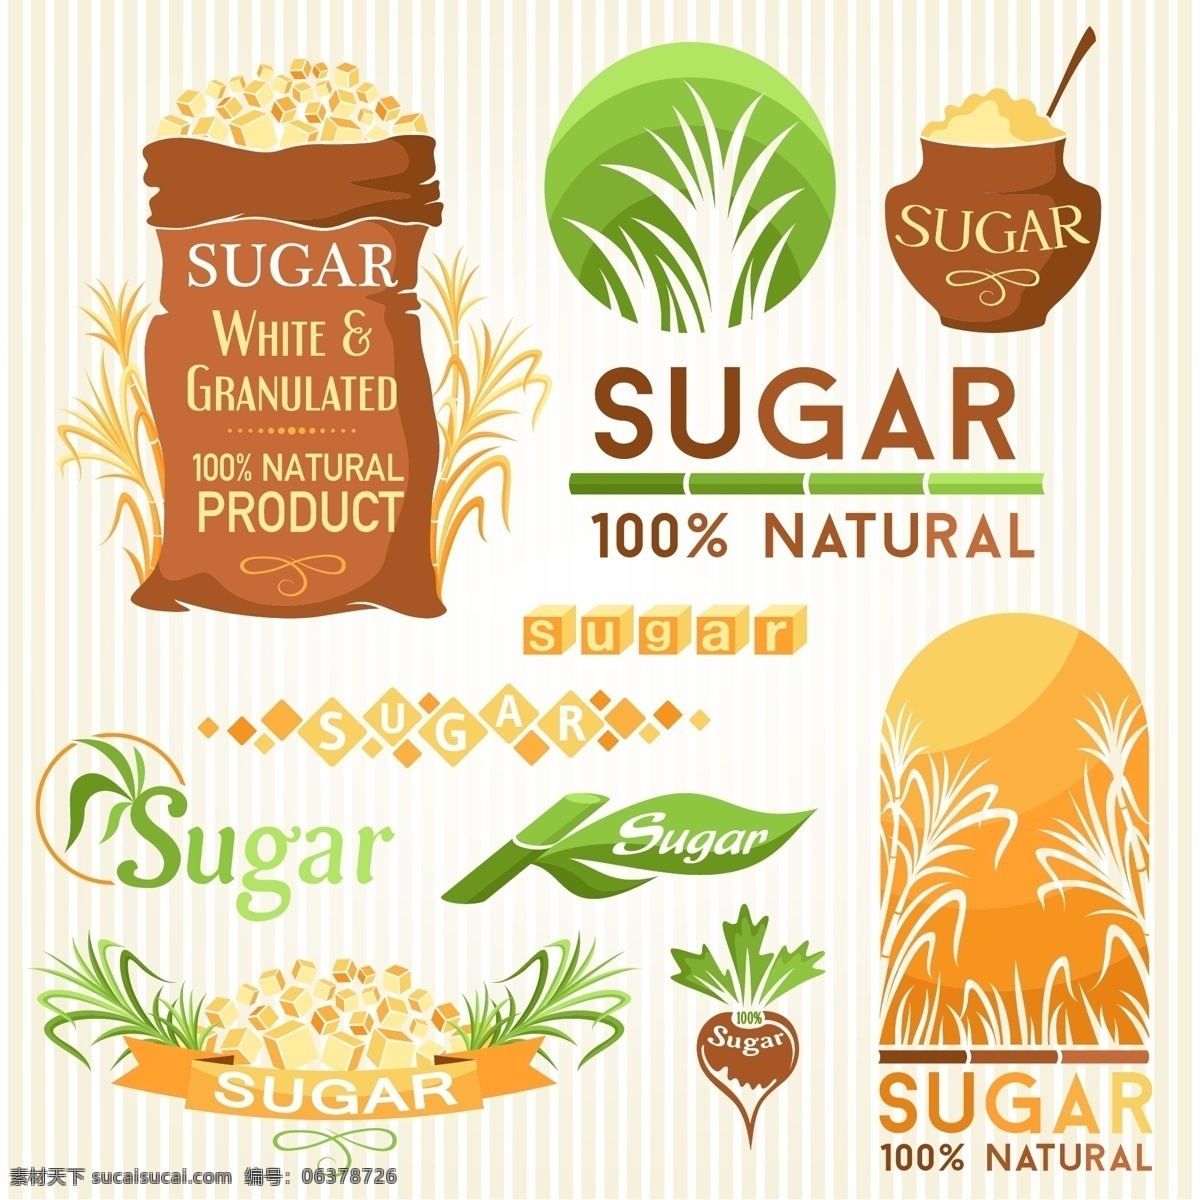 糖类标签 sugar 胡萝卜 甜菜 甘蔗 蔗糖 绿色 生态 原生态 农场 种植 加工 糖类 标签 logo 标志 标识 标志图标 企业